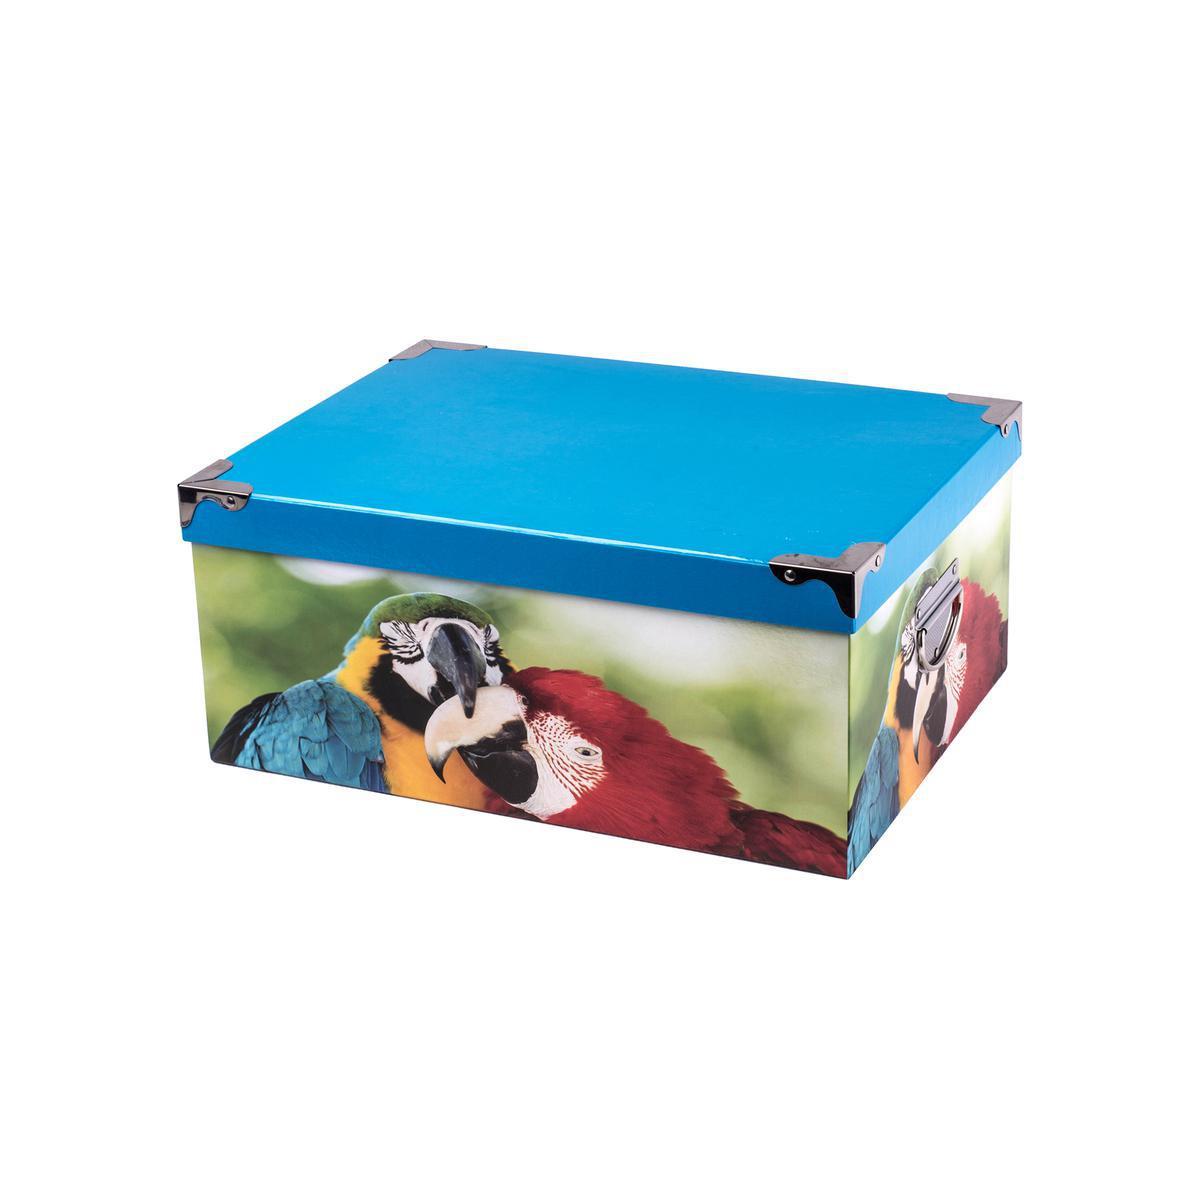 Boîte de rangement - Carton et métal - 31 x 23,5 x H 13,5 cm - Multicolore